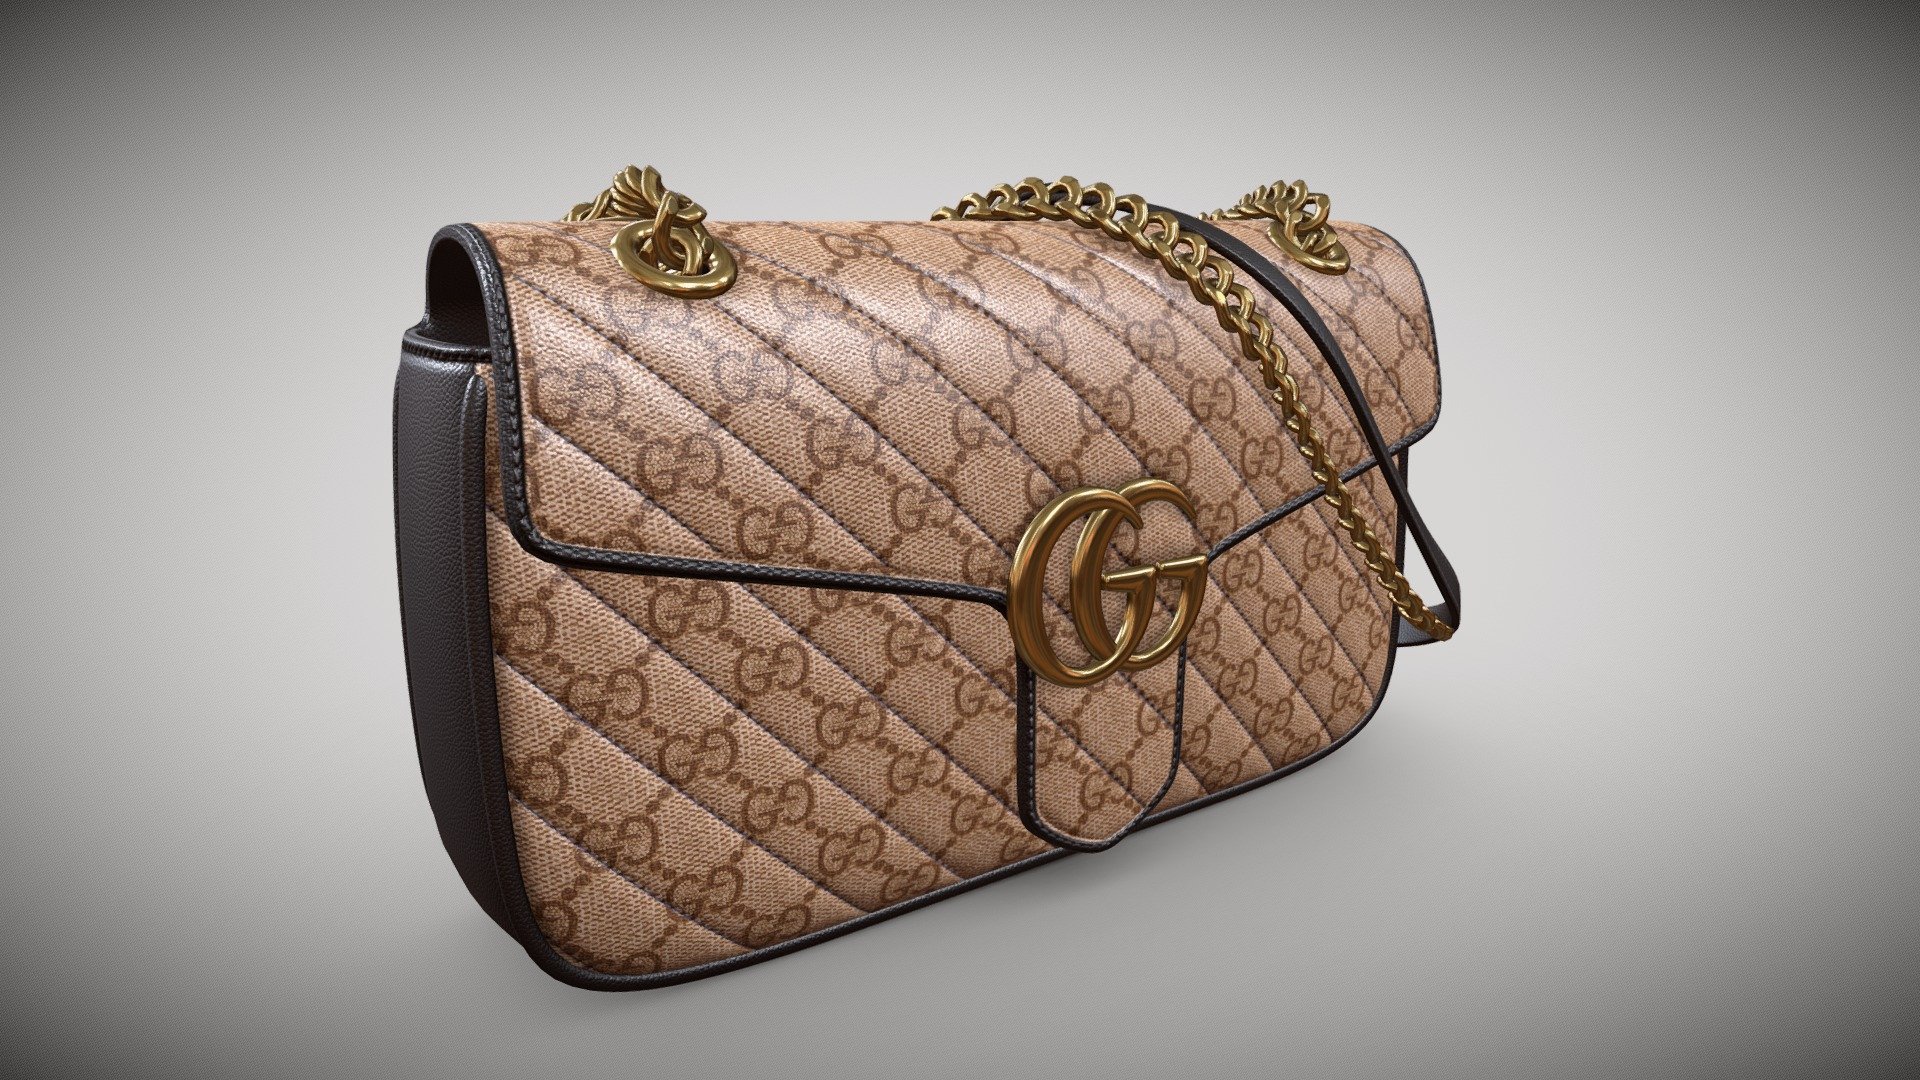 914 Gucci Handbag Images, Stock Photos, 3D objects, & Vectors